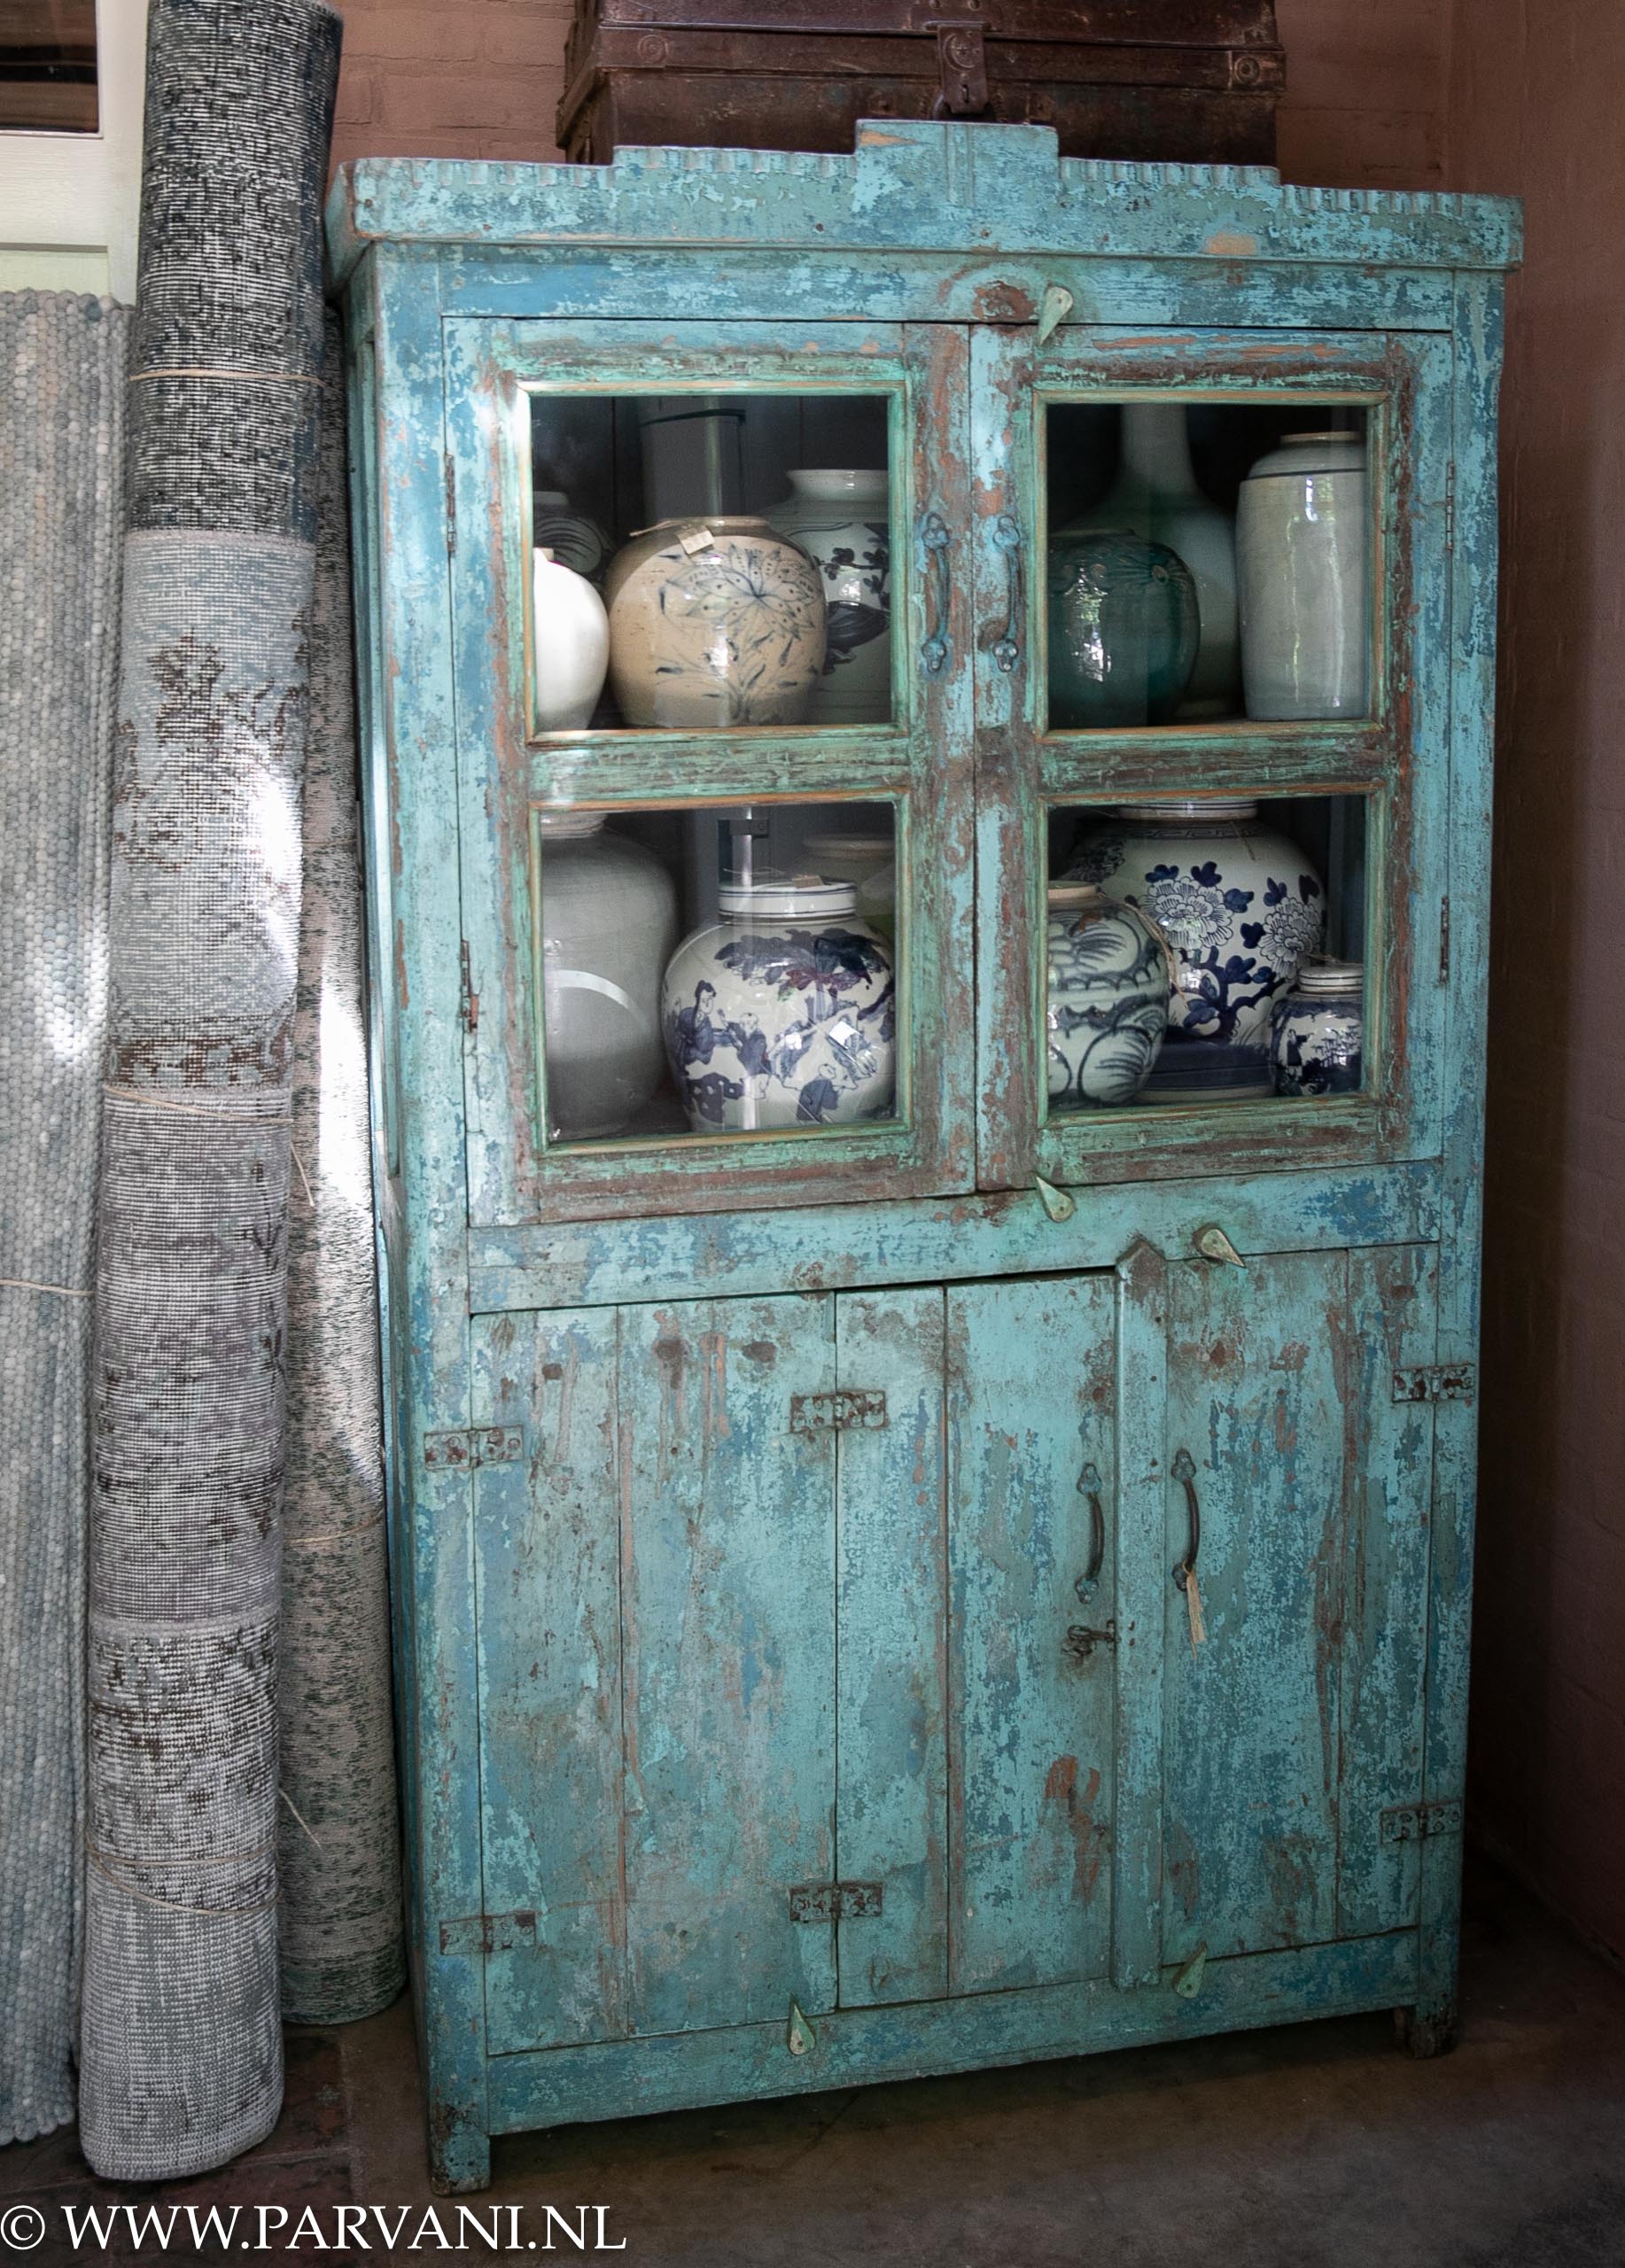 Oude kast glas deuren blauw groen turquoise verf | Parvani